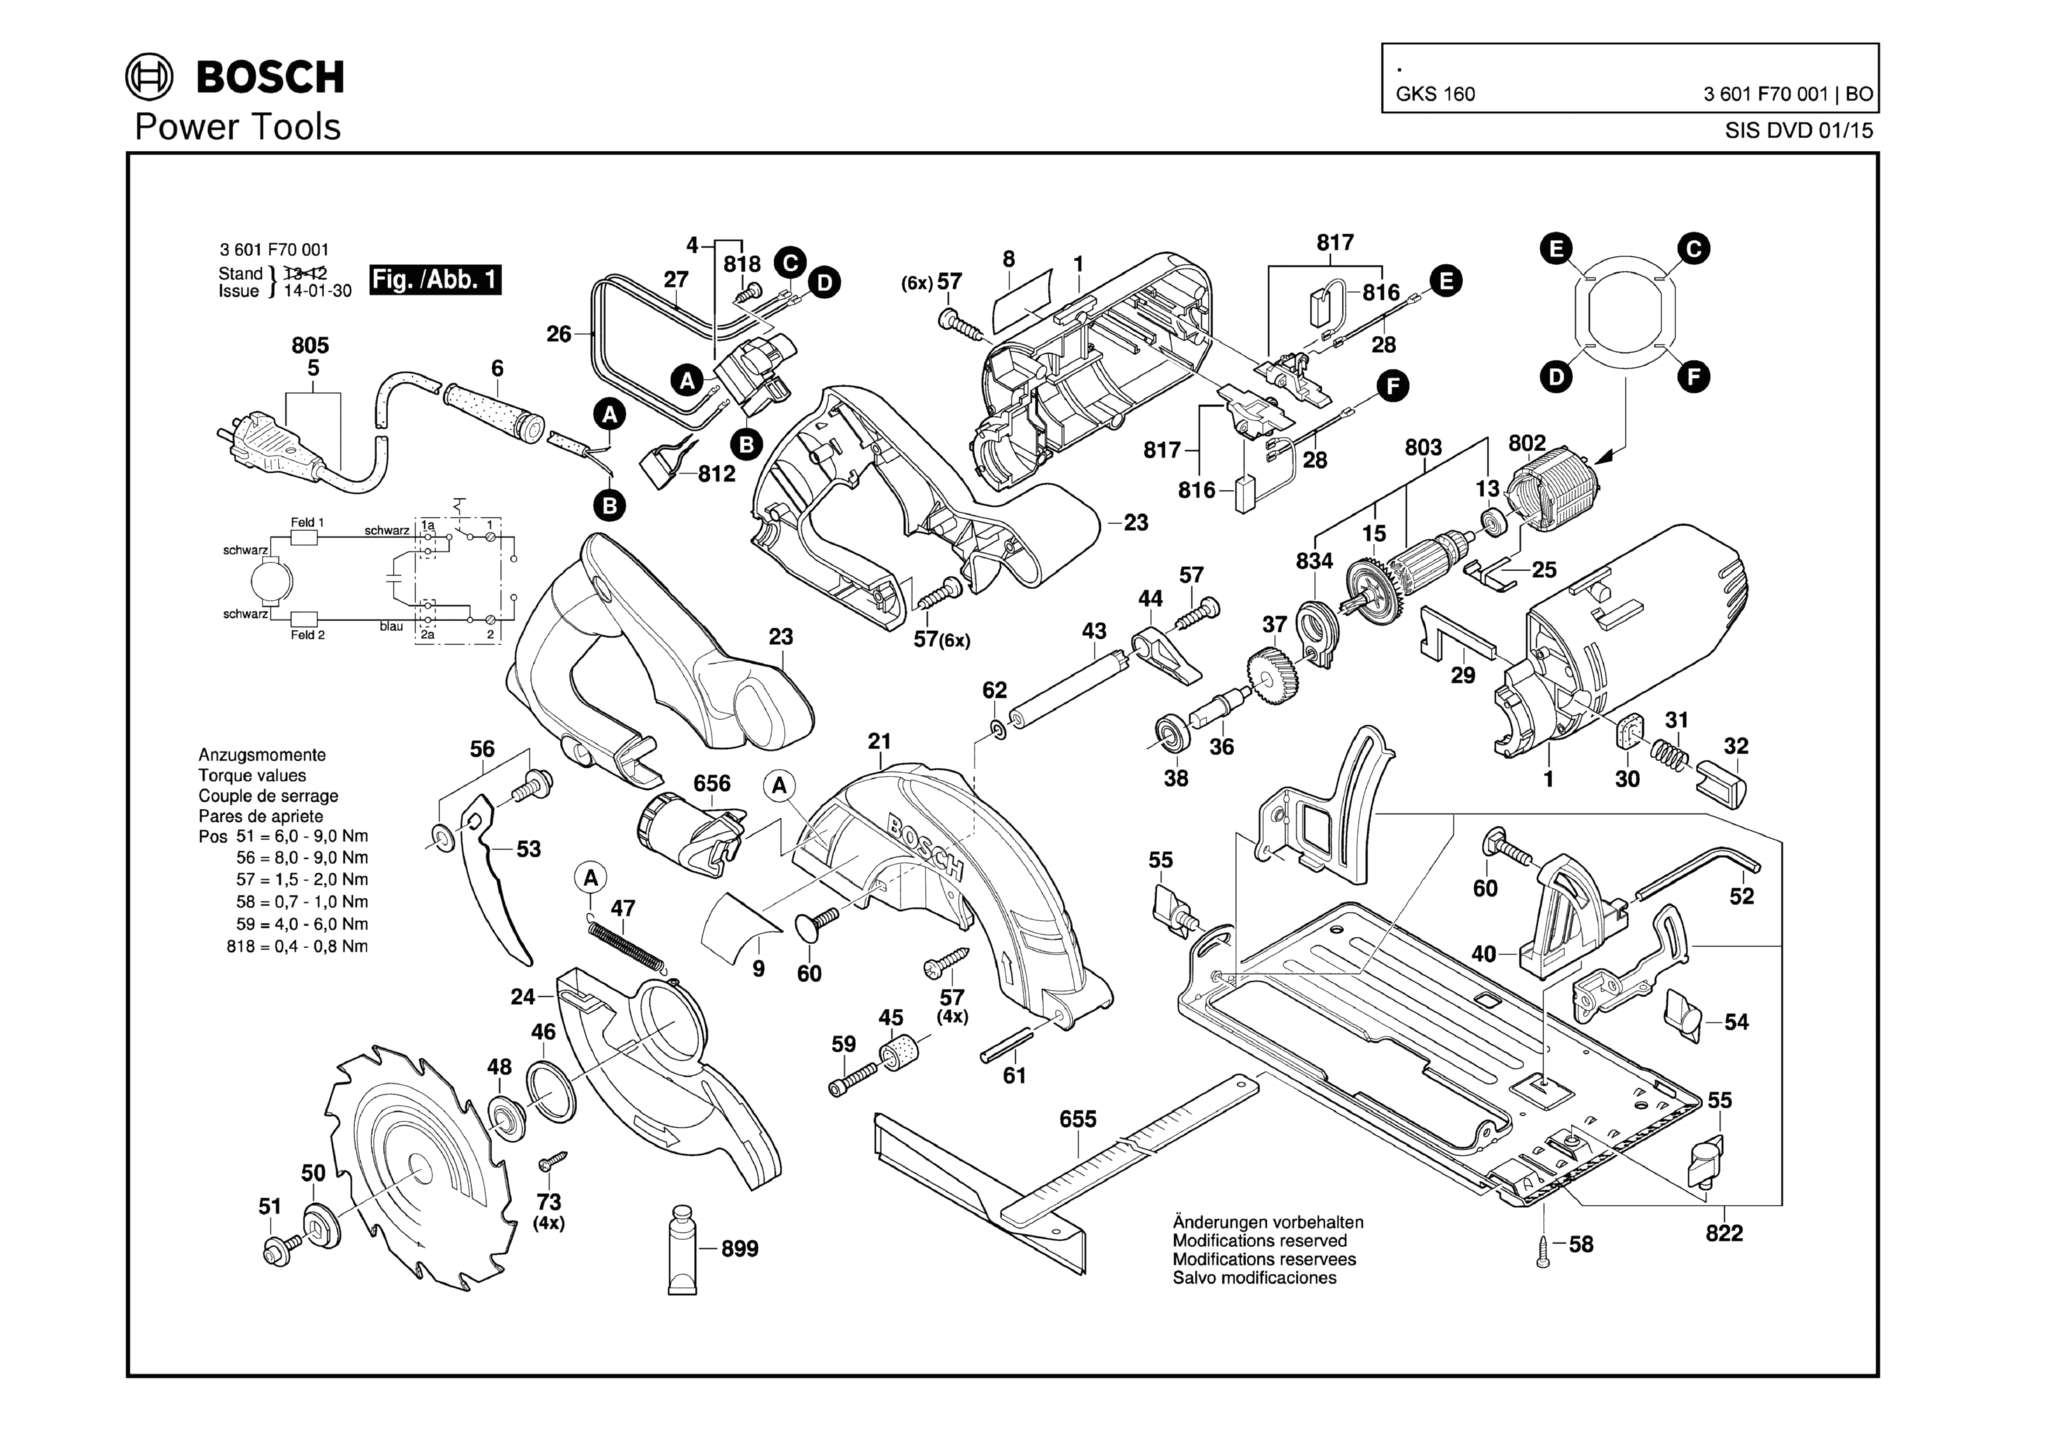 Запчасти, схема и деталировка Bosch GKS 160 (ТИП 3601F70001)